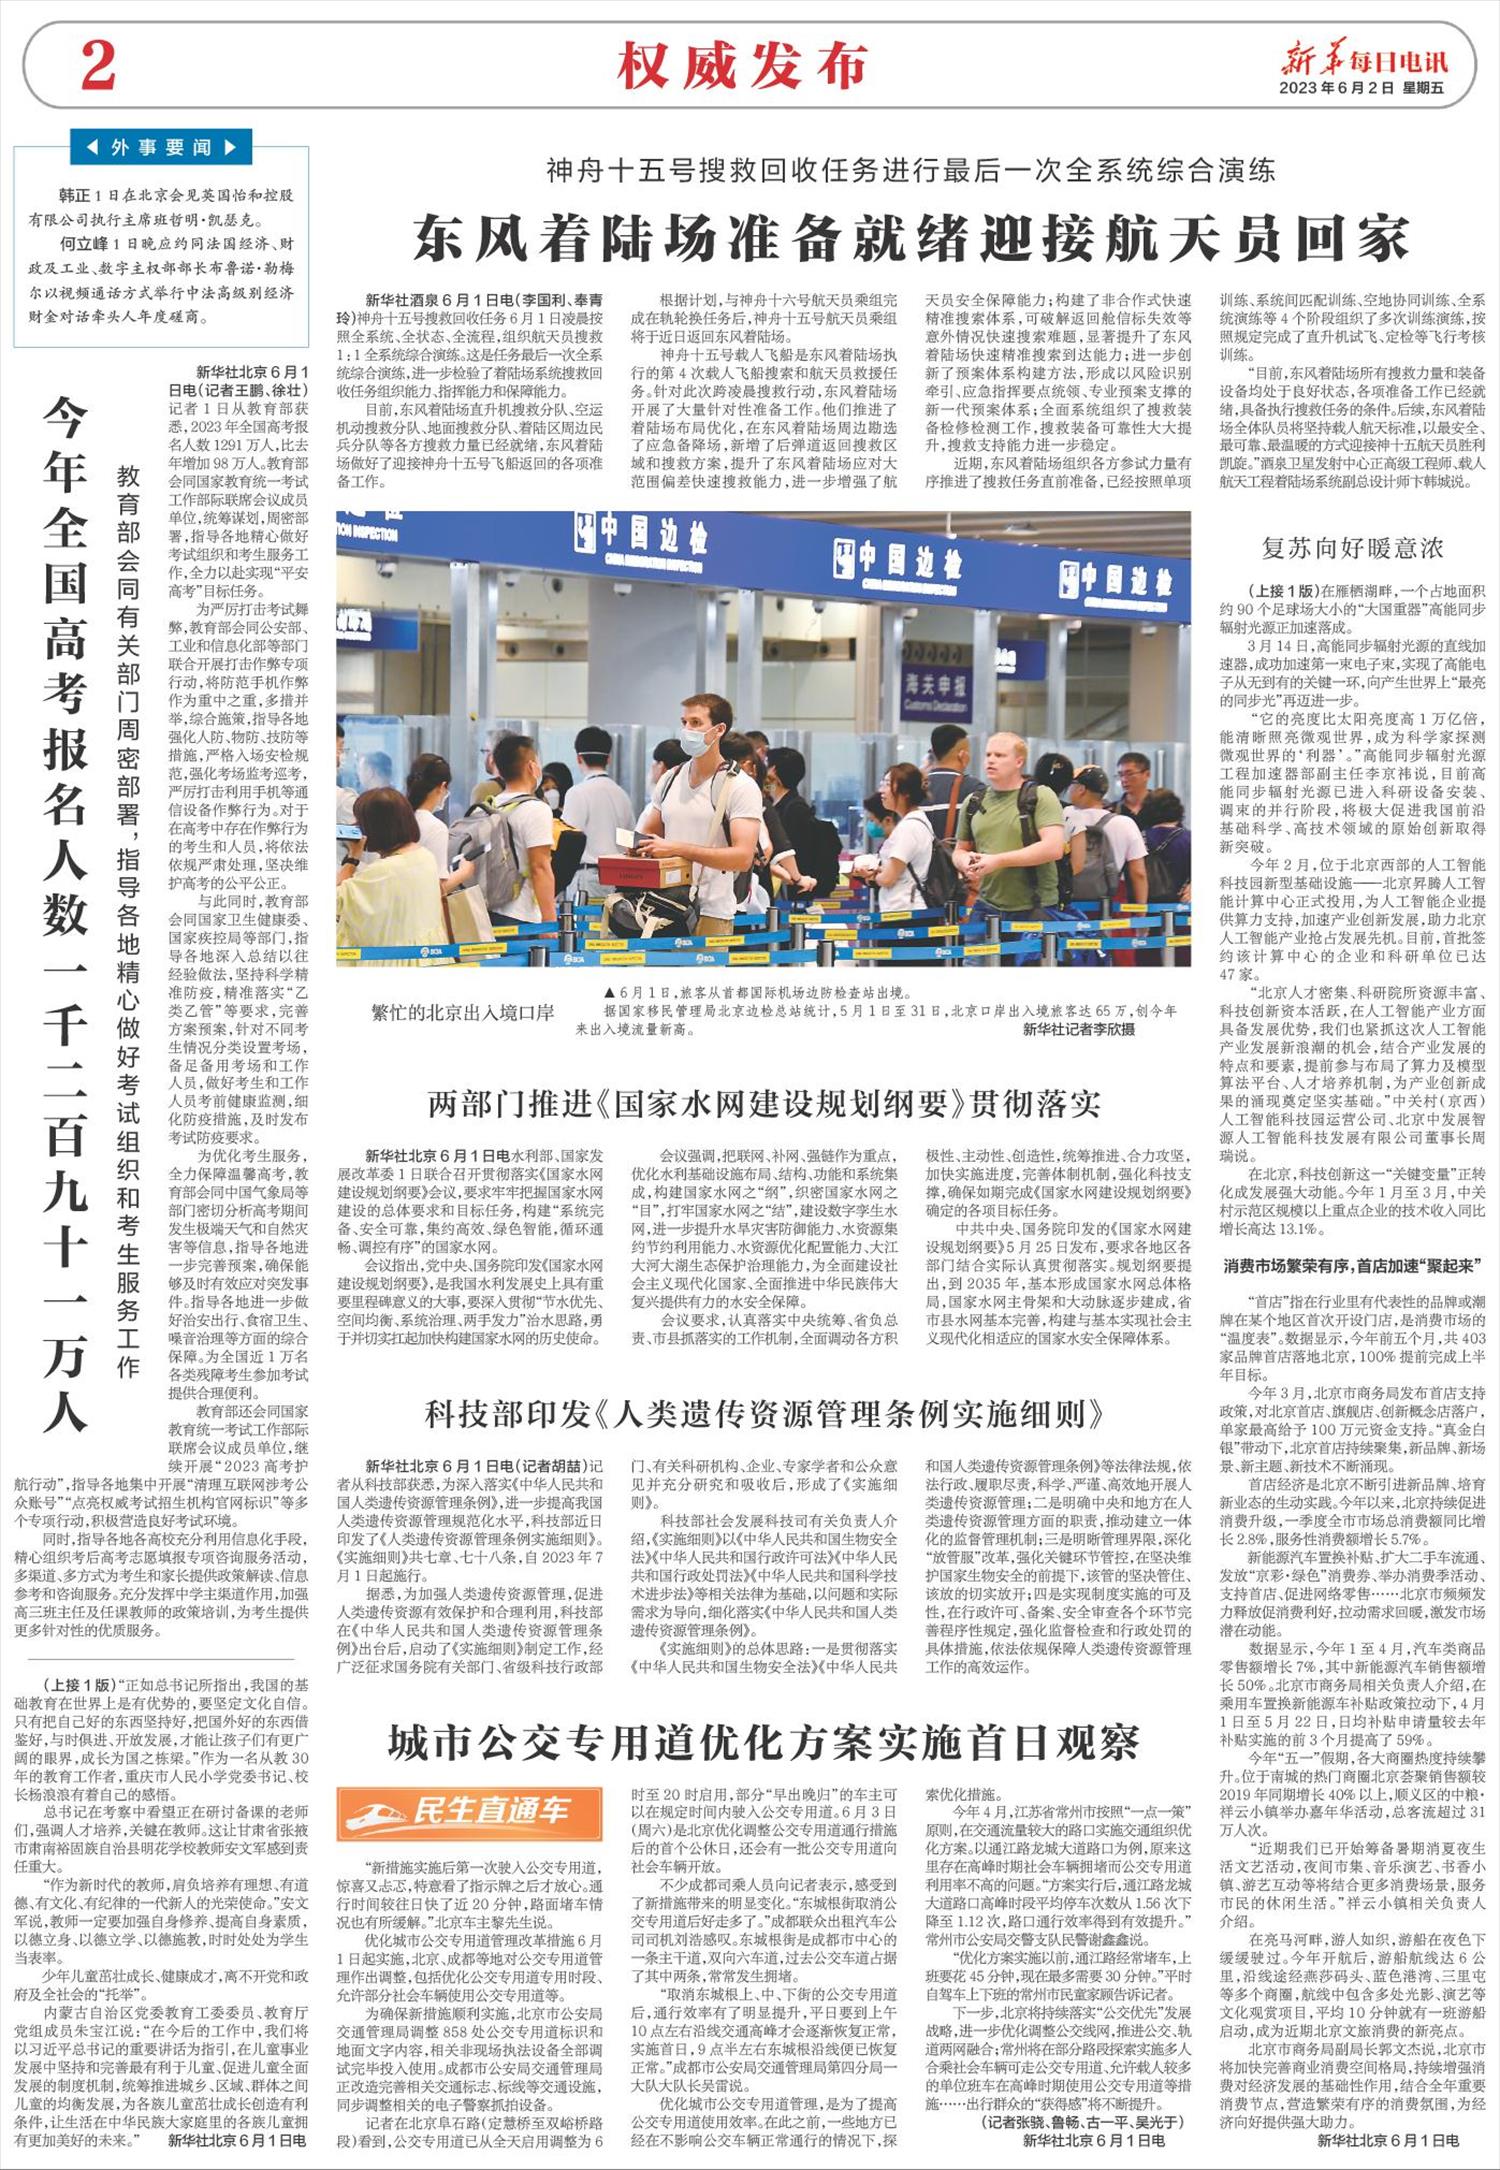 新华每日电讯-微报纸-2023年06月02日